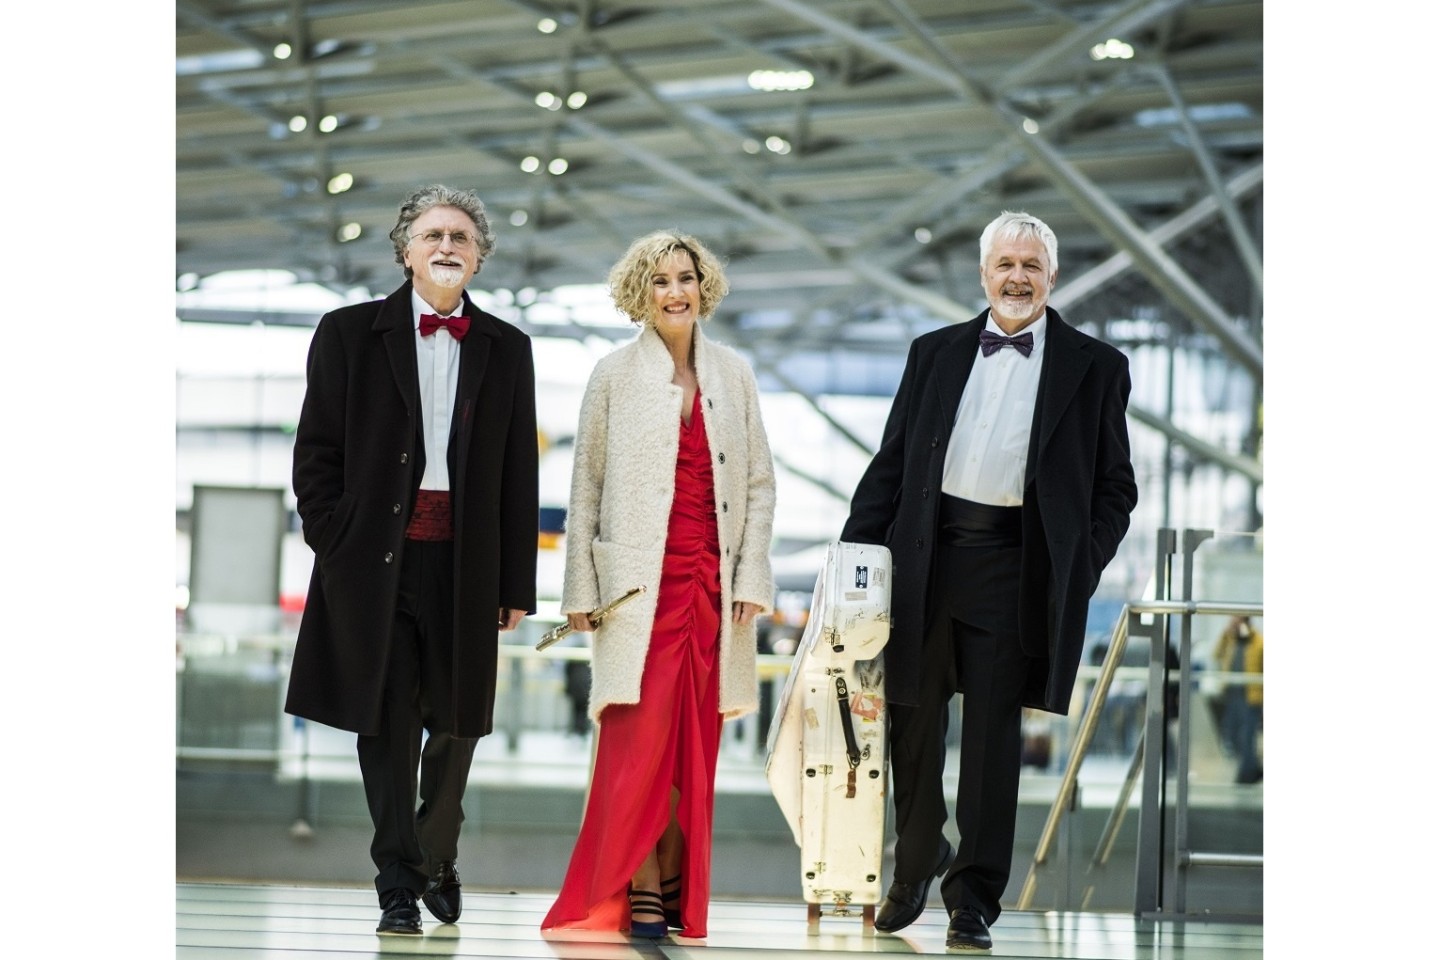 Flötistin Christiane Meininger, mit dem Cellisten Miloš Mlejnik und dem Pianisten Rainer Gepp